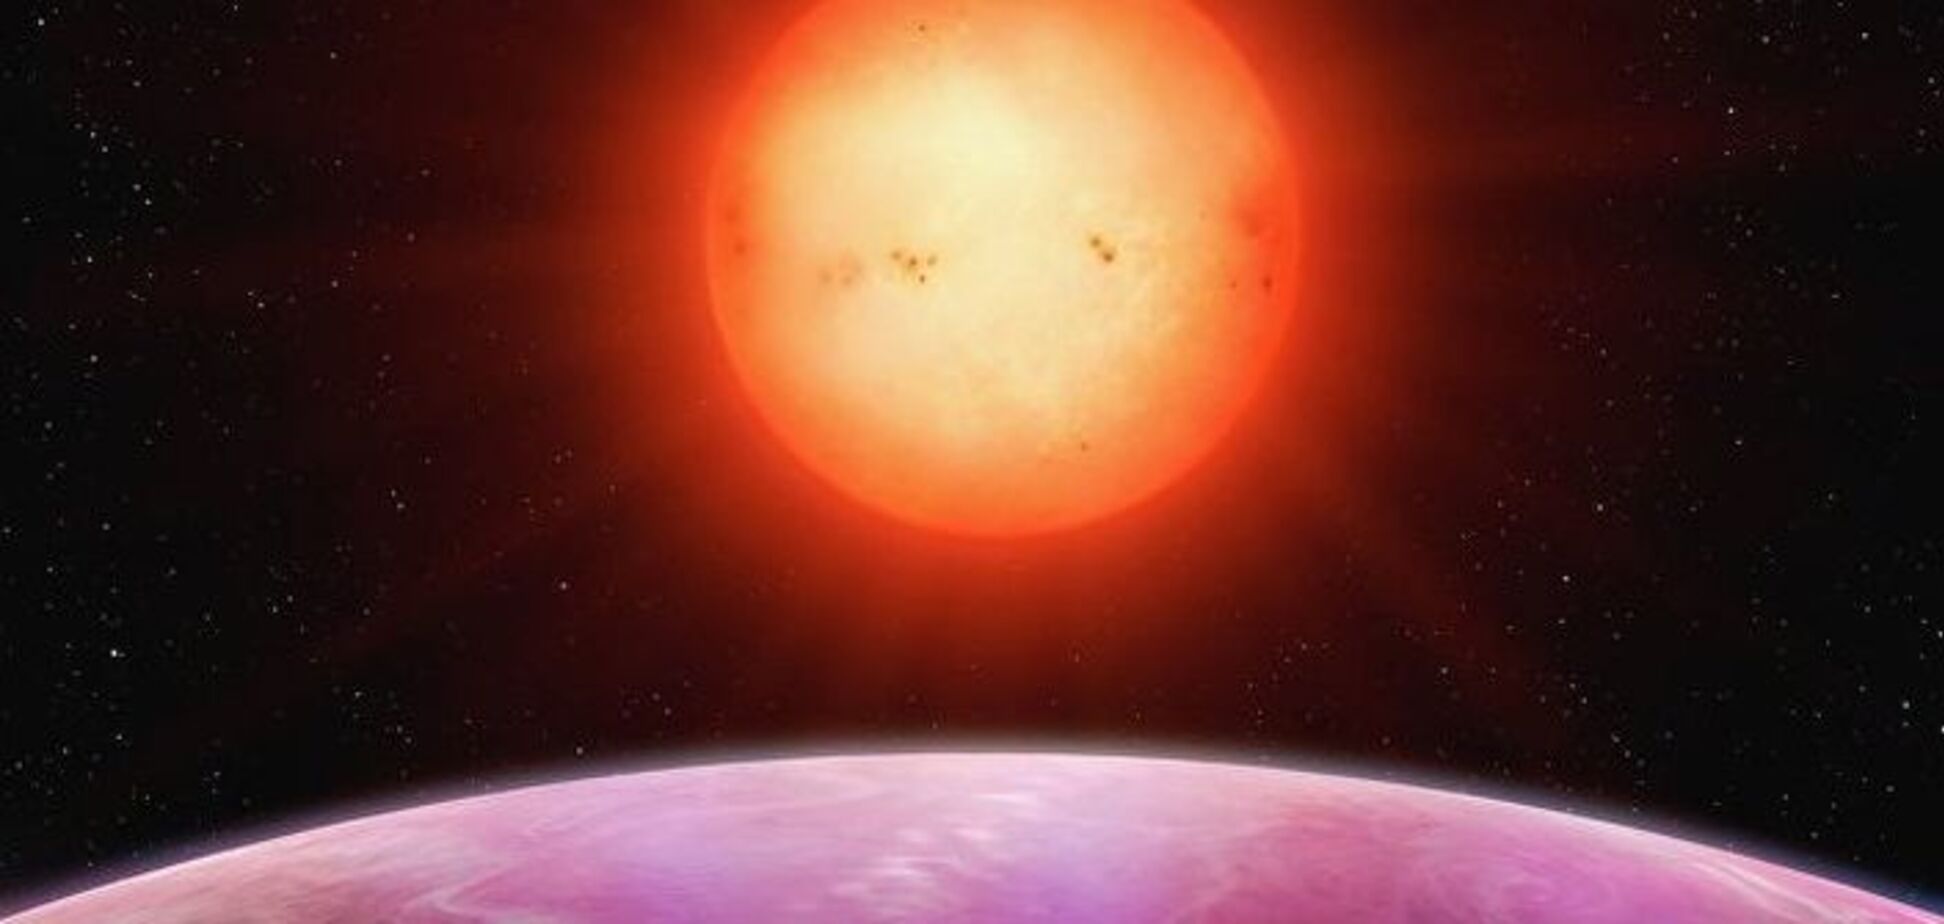 Ще один виклик загадці Всесвіту: астрономи знайшли таємничу планету